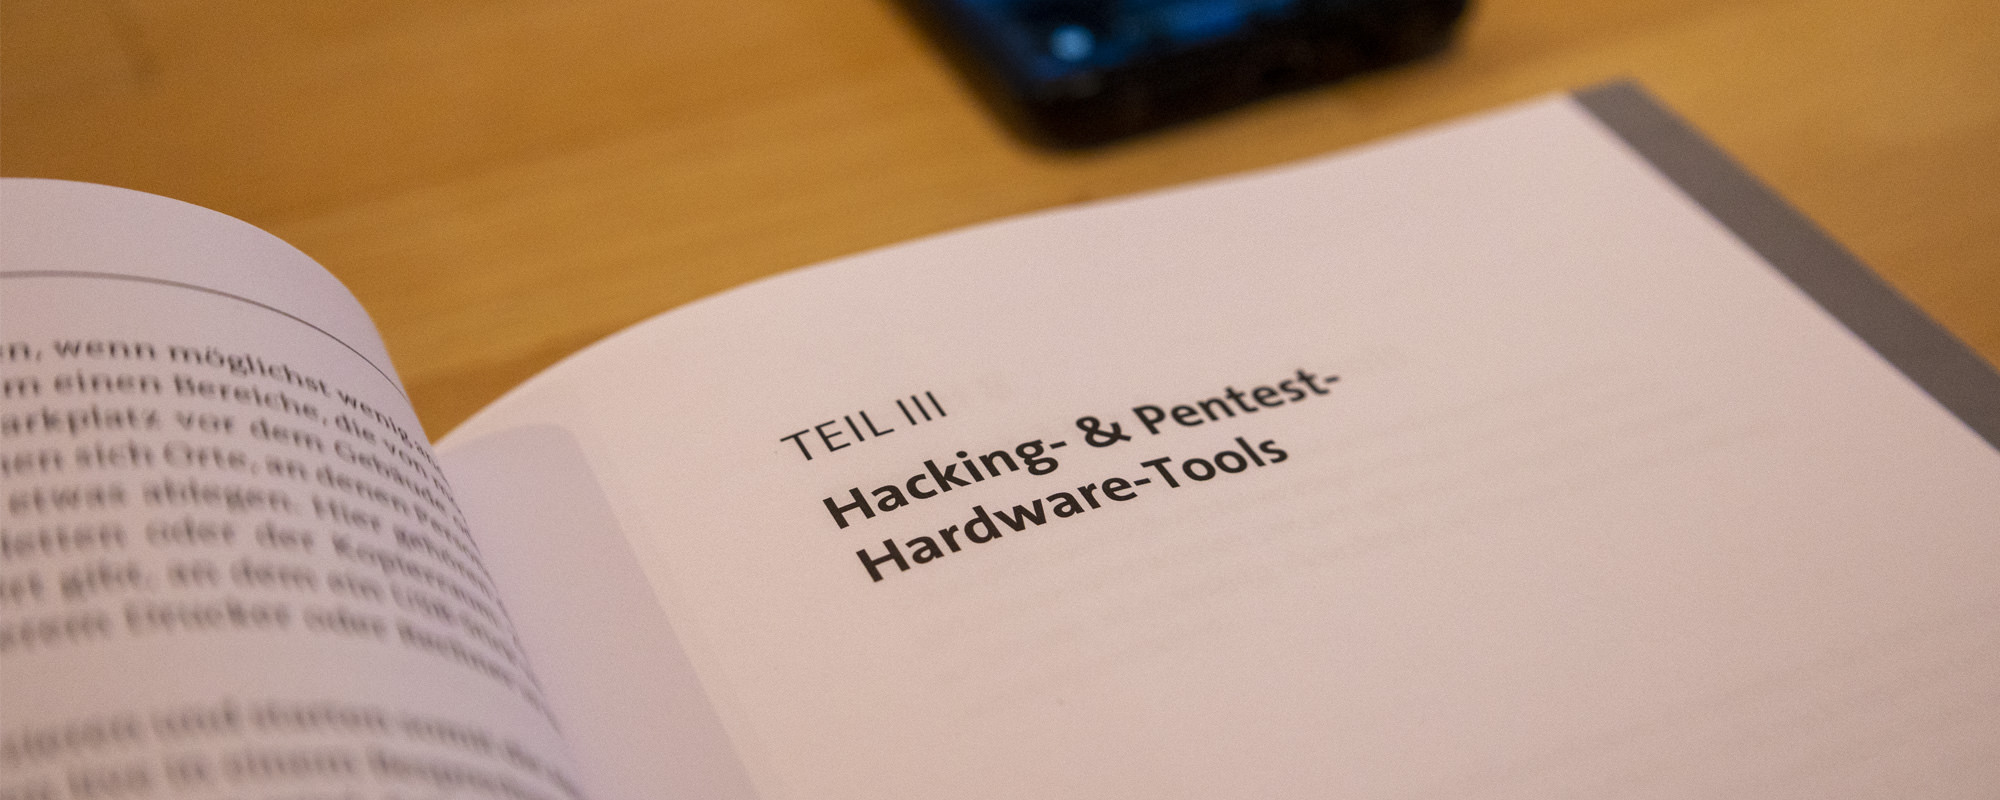 3. Teil des Buches Hardware & Security